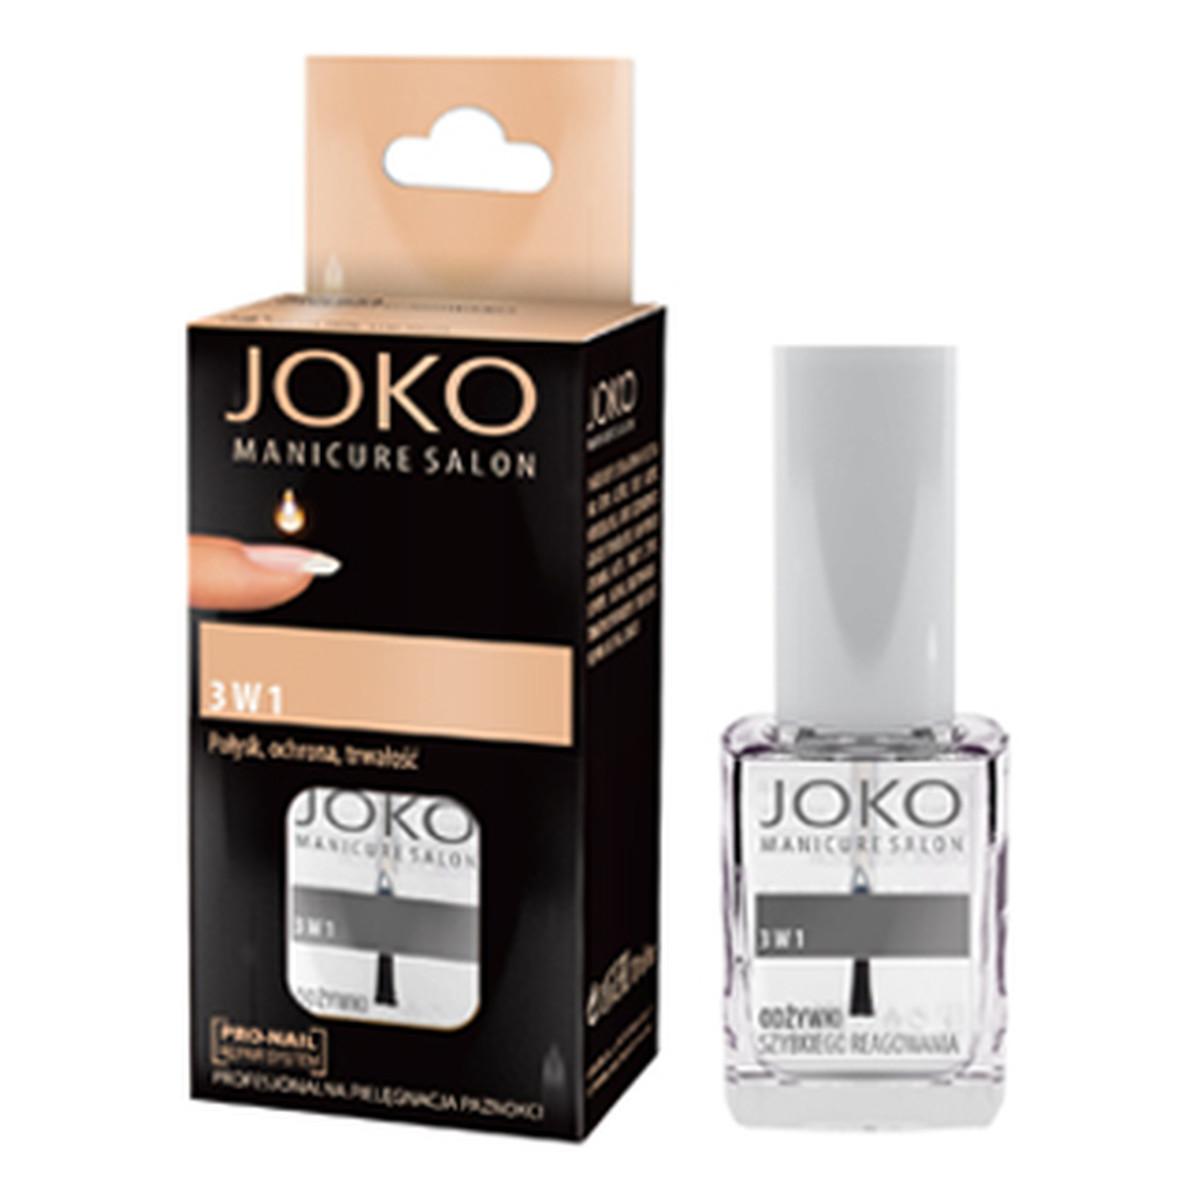 Joko Manicure Salon Odżywka do paznokci 3w1 10ml